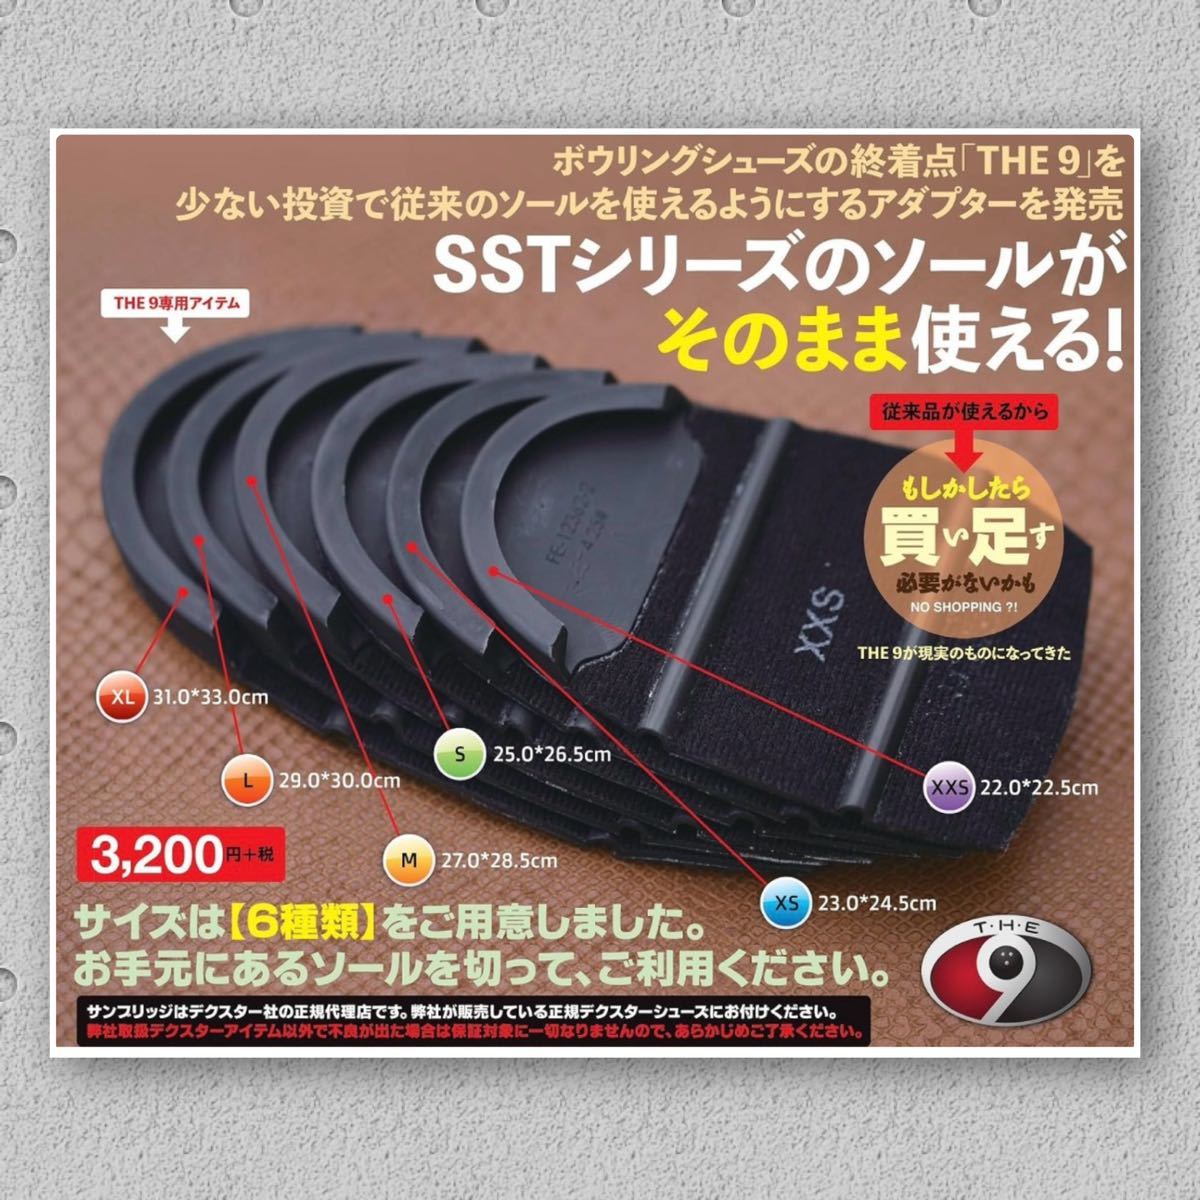 Dexter THE9 ソールアダプター Mサイズ デクスター ボウリング SSTシリーズソールパーツ 他社ソールパーツが使える ソールアダプター 美品_画像7